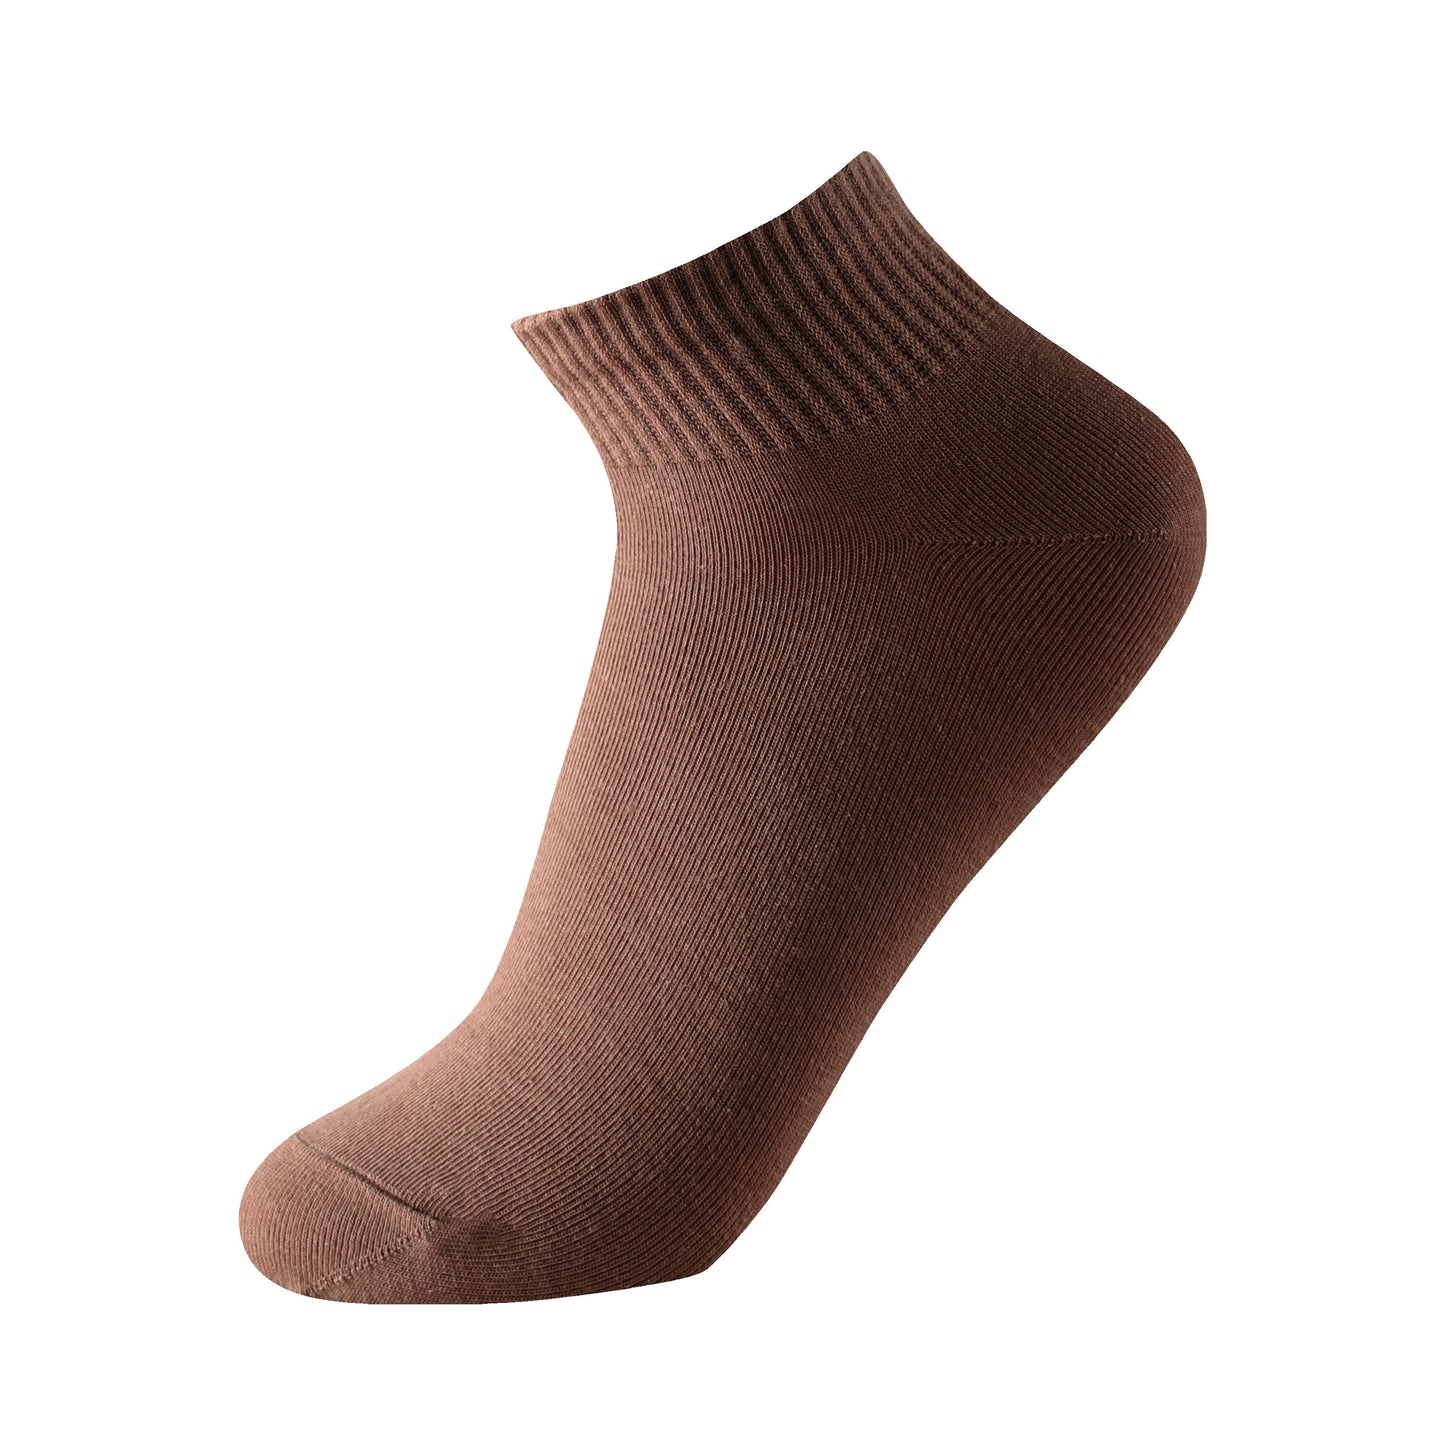 Calcetines de caña baja tipo básico talla de la 35 a la 45 modelo “Brown colorfull”